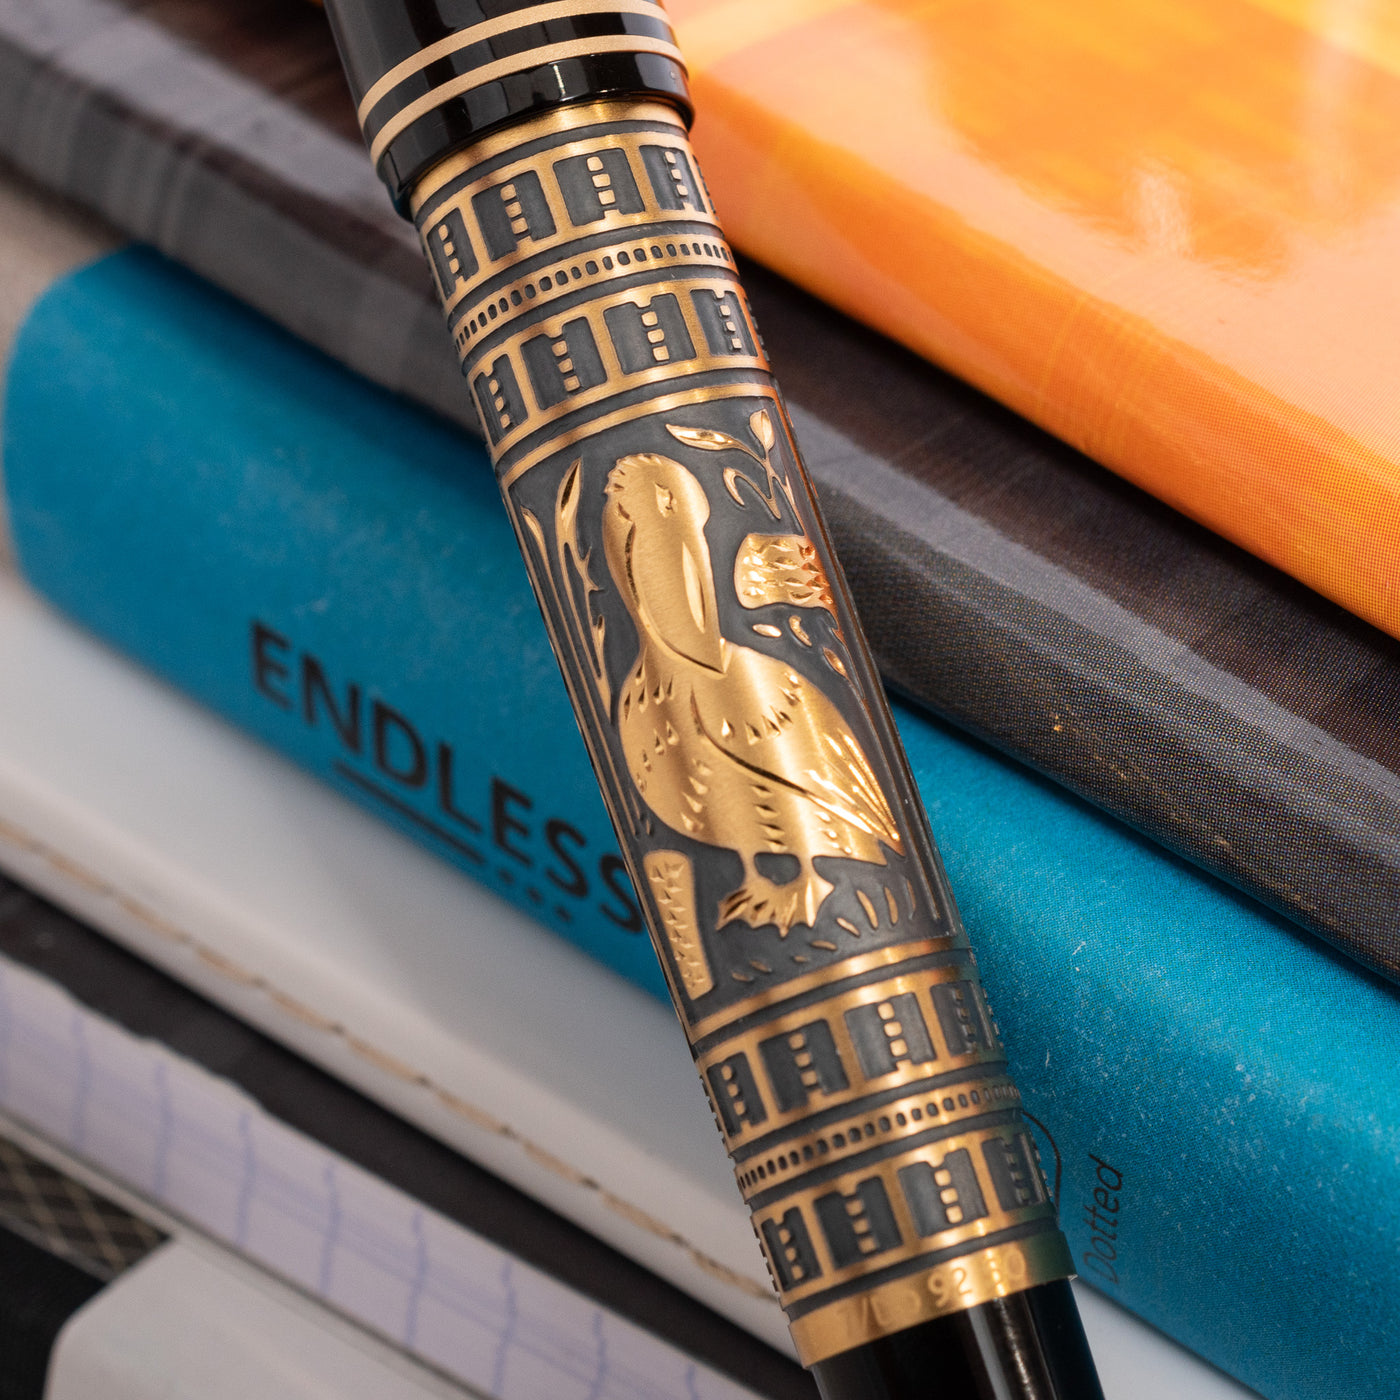 Pelikan Souveran M700 Special Edition Toledo Fountain Pen Hand Engraving